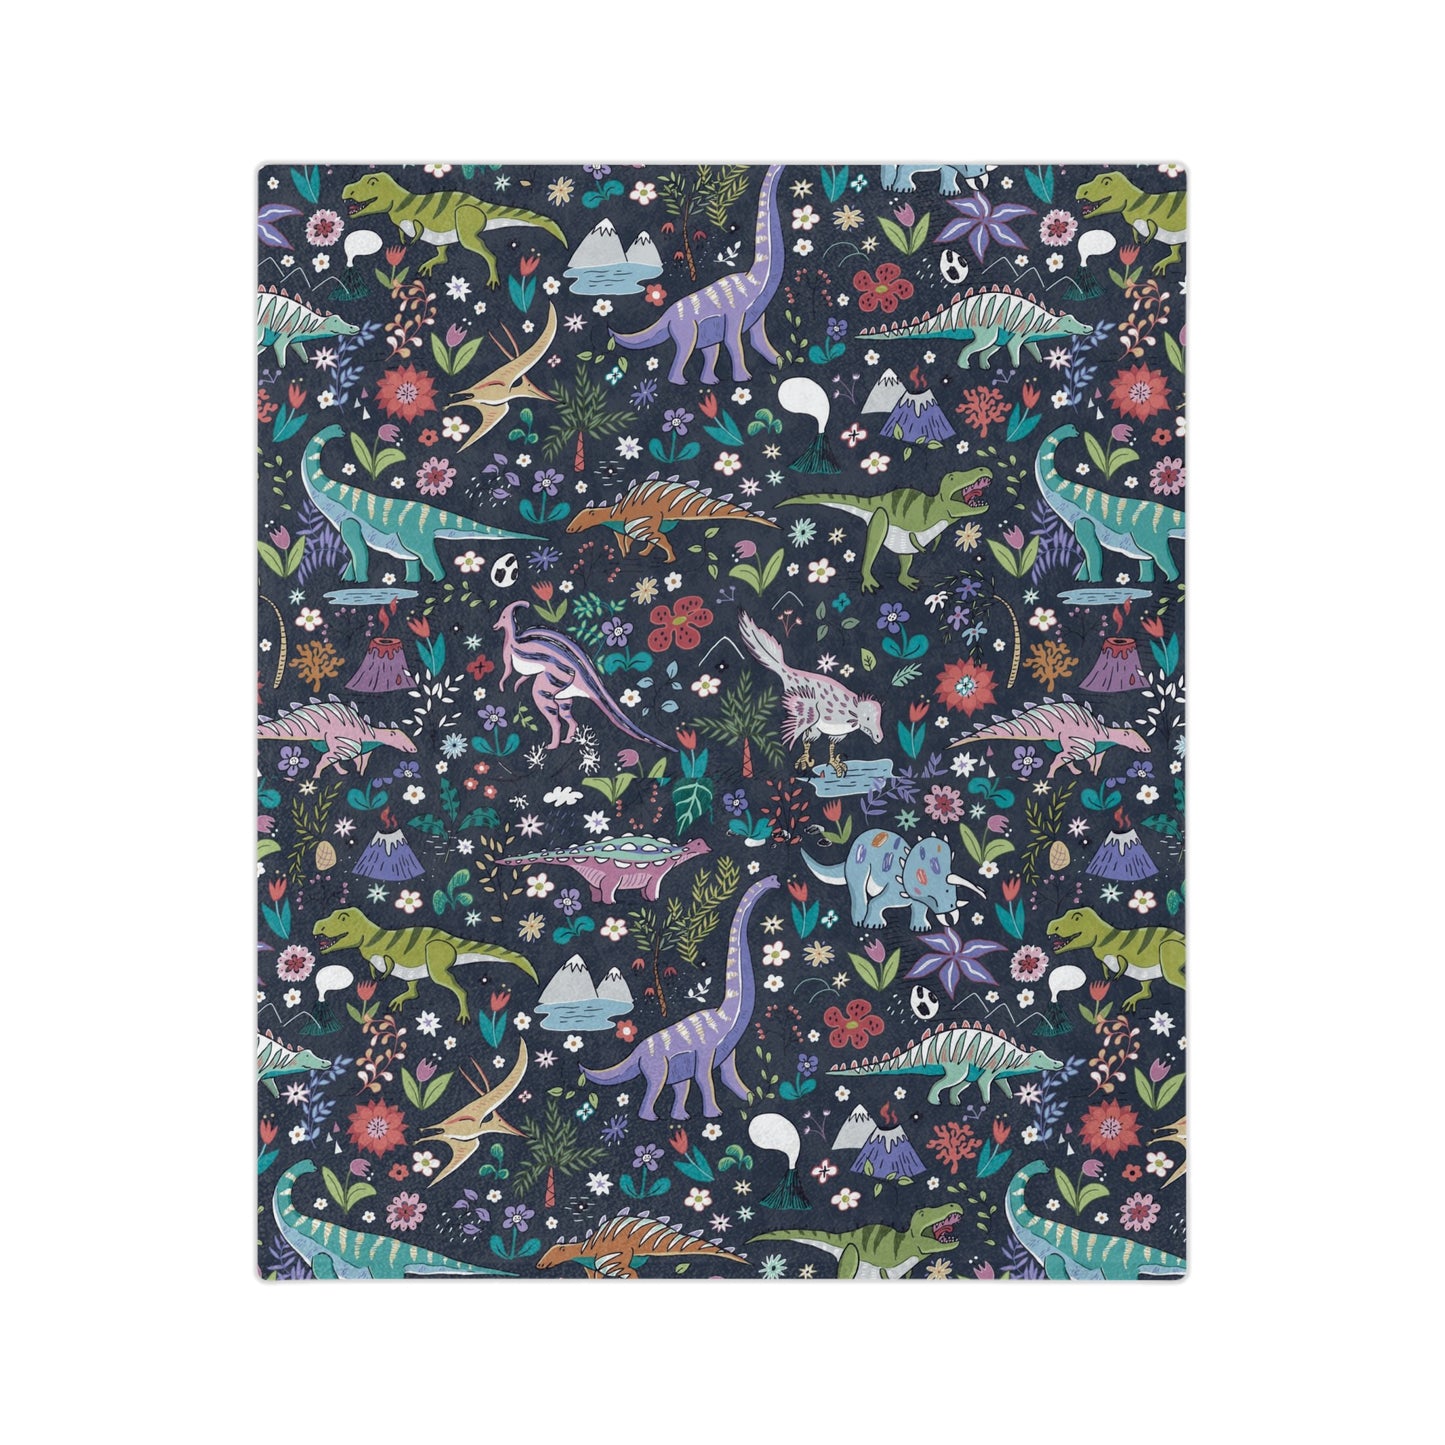 Dinosaur world Velveteen Minky Blanket with dark background.